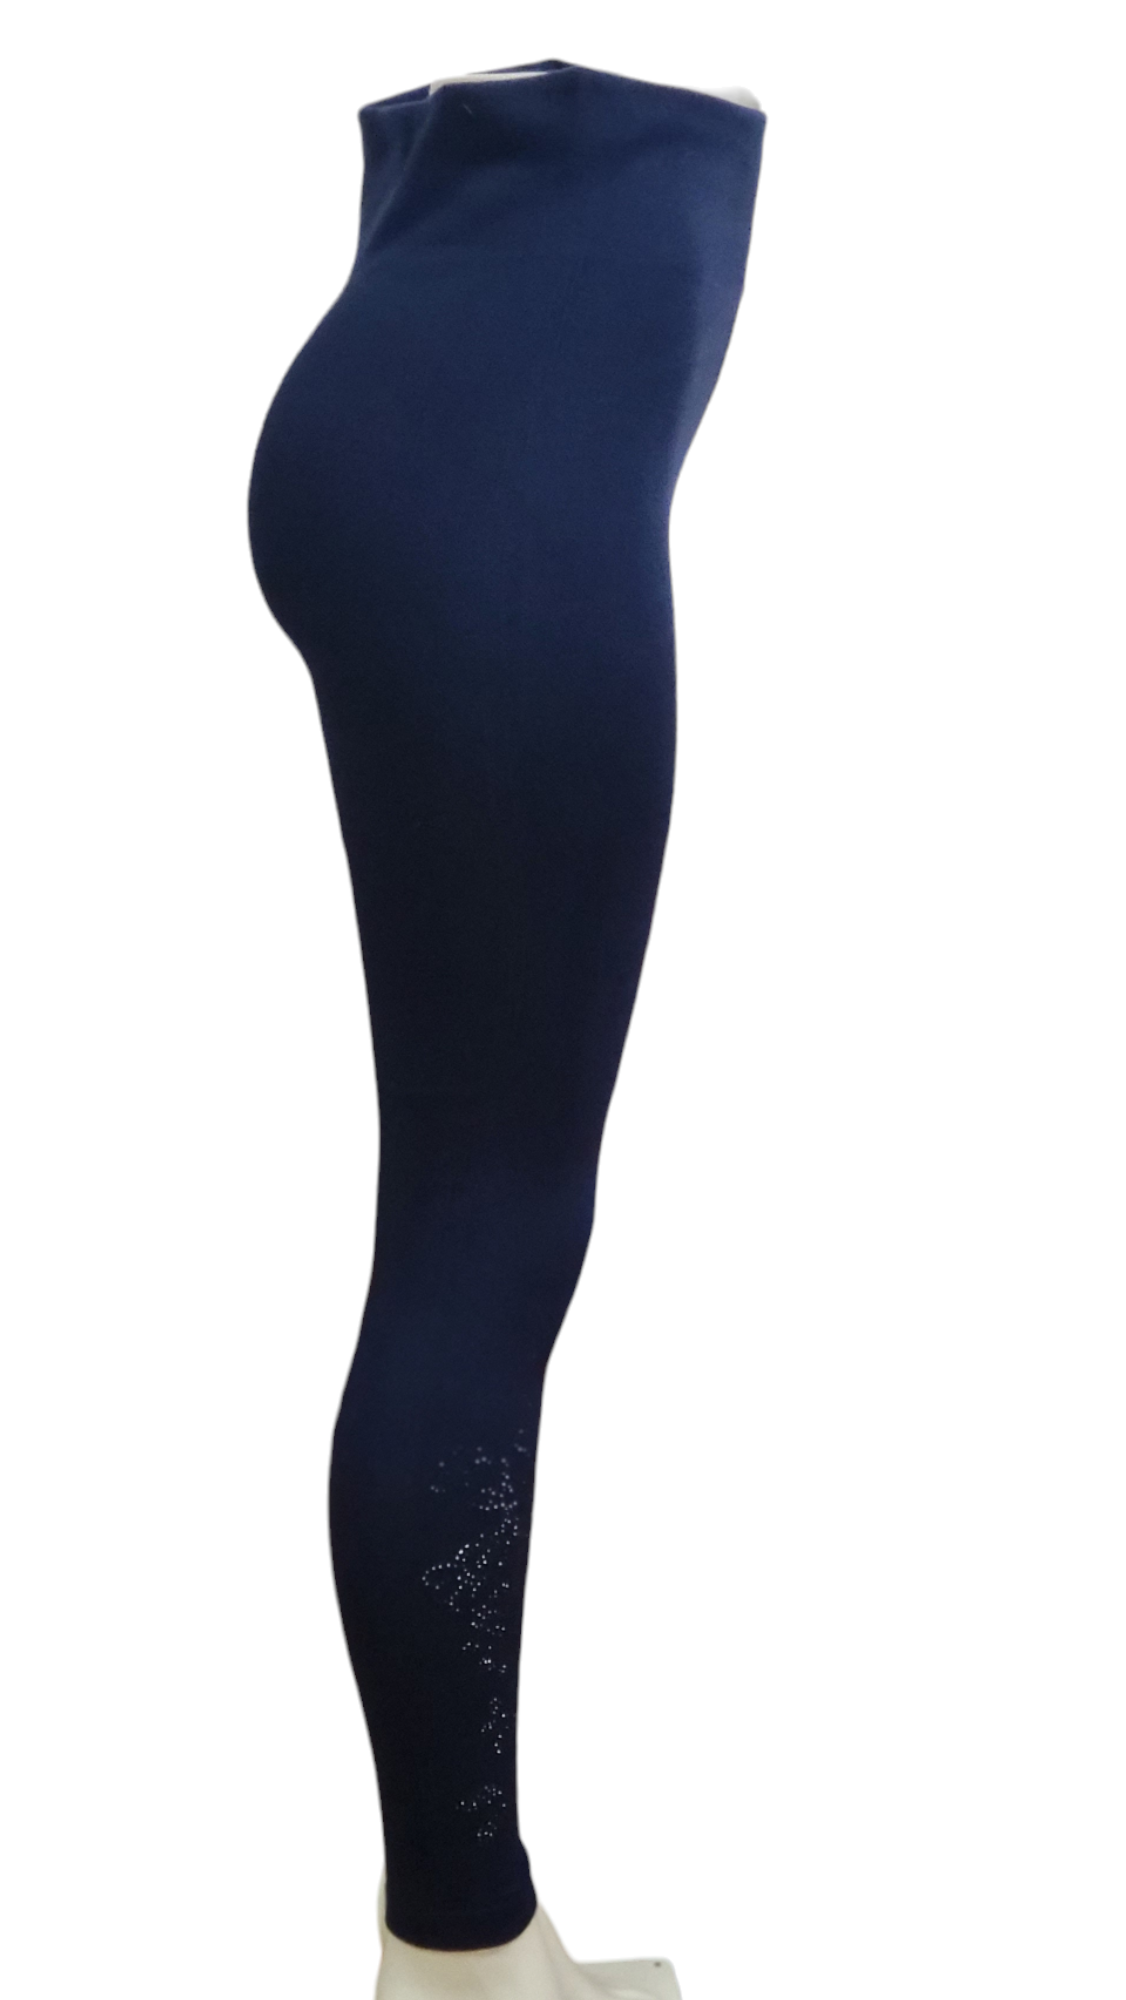 Fleece Lined Leggings, Premium Fabric Blend, Leggings for Women - Size M/T,  Navy Blue Design 